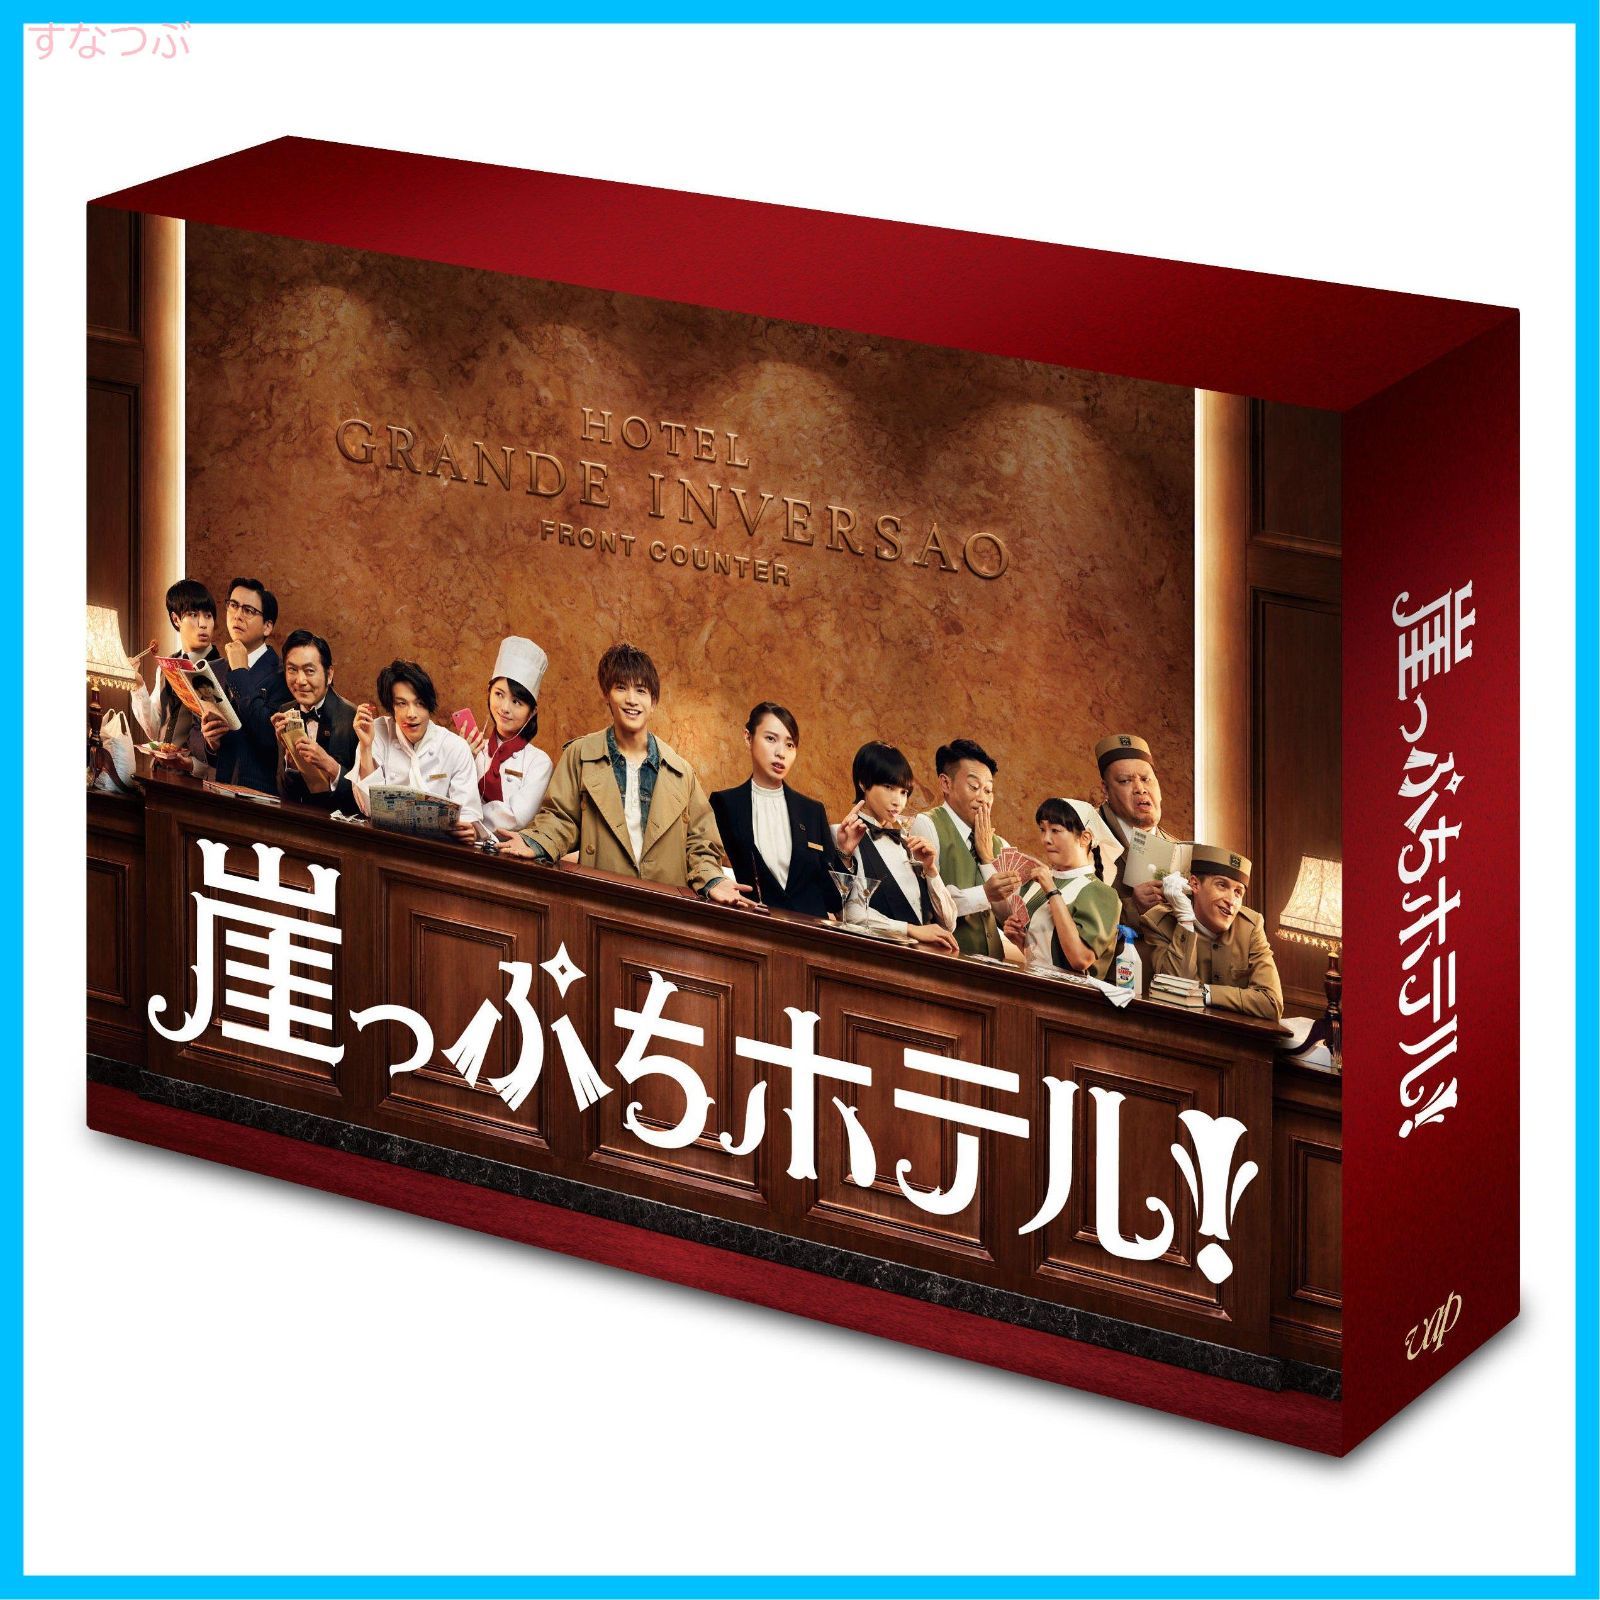 10,580円崖っぷちホテル! DVD-BOX〈6枚組〉新品未開封